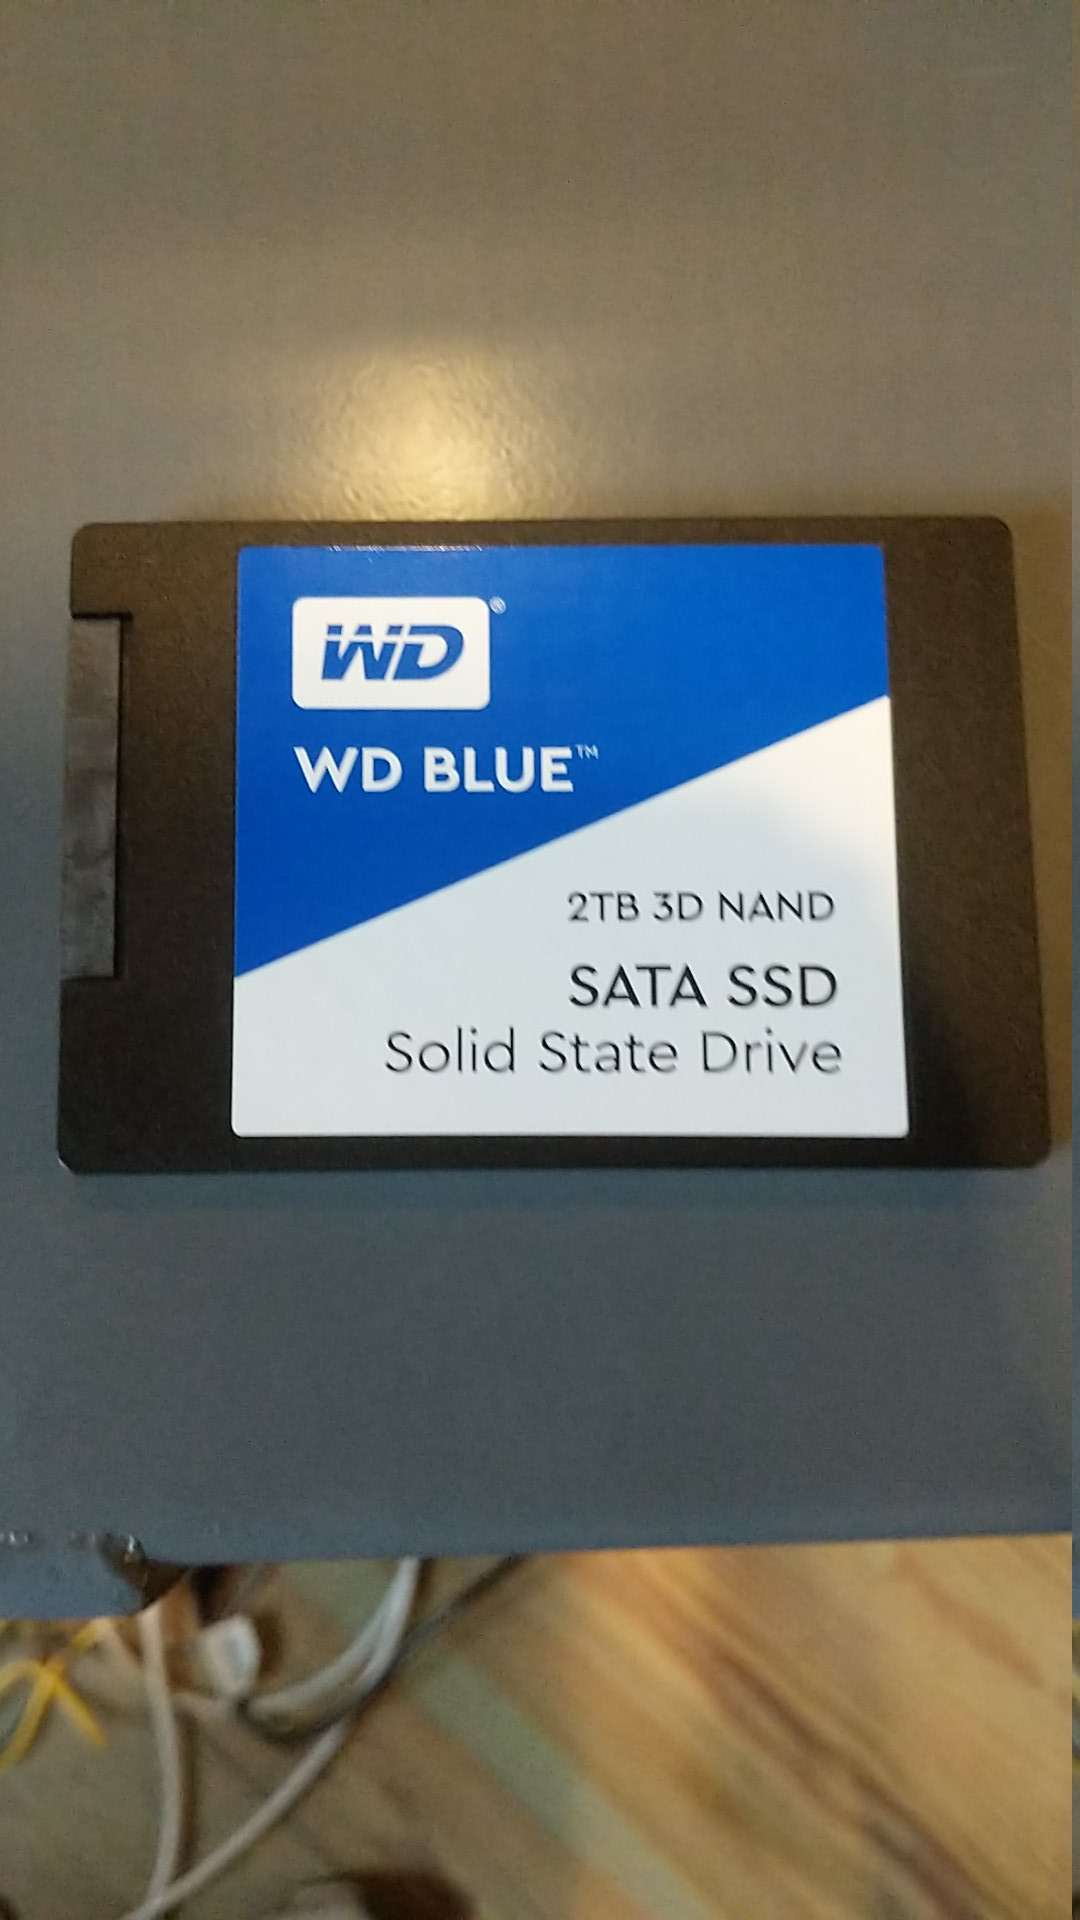 My SSD